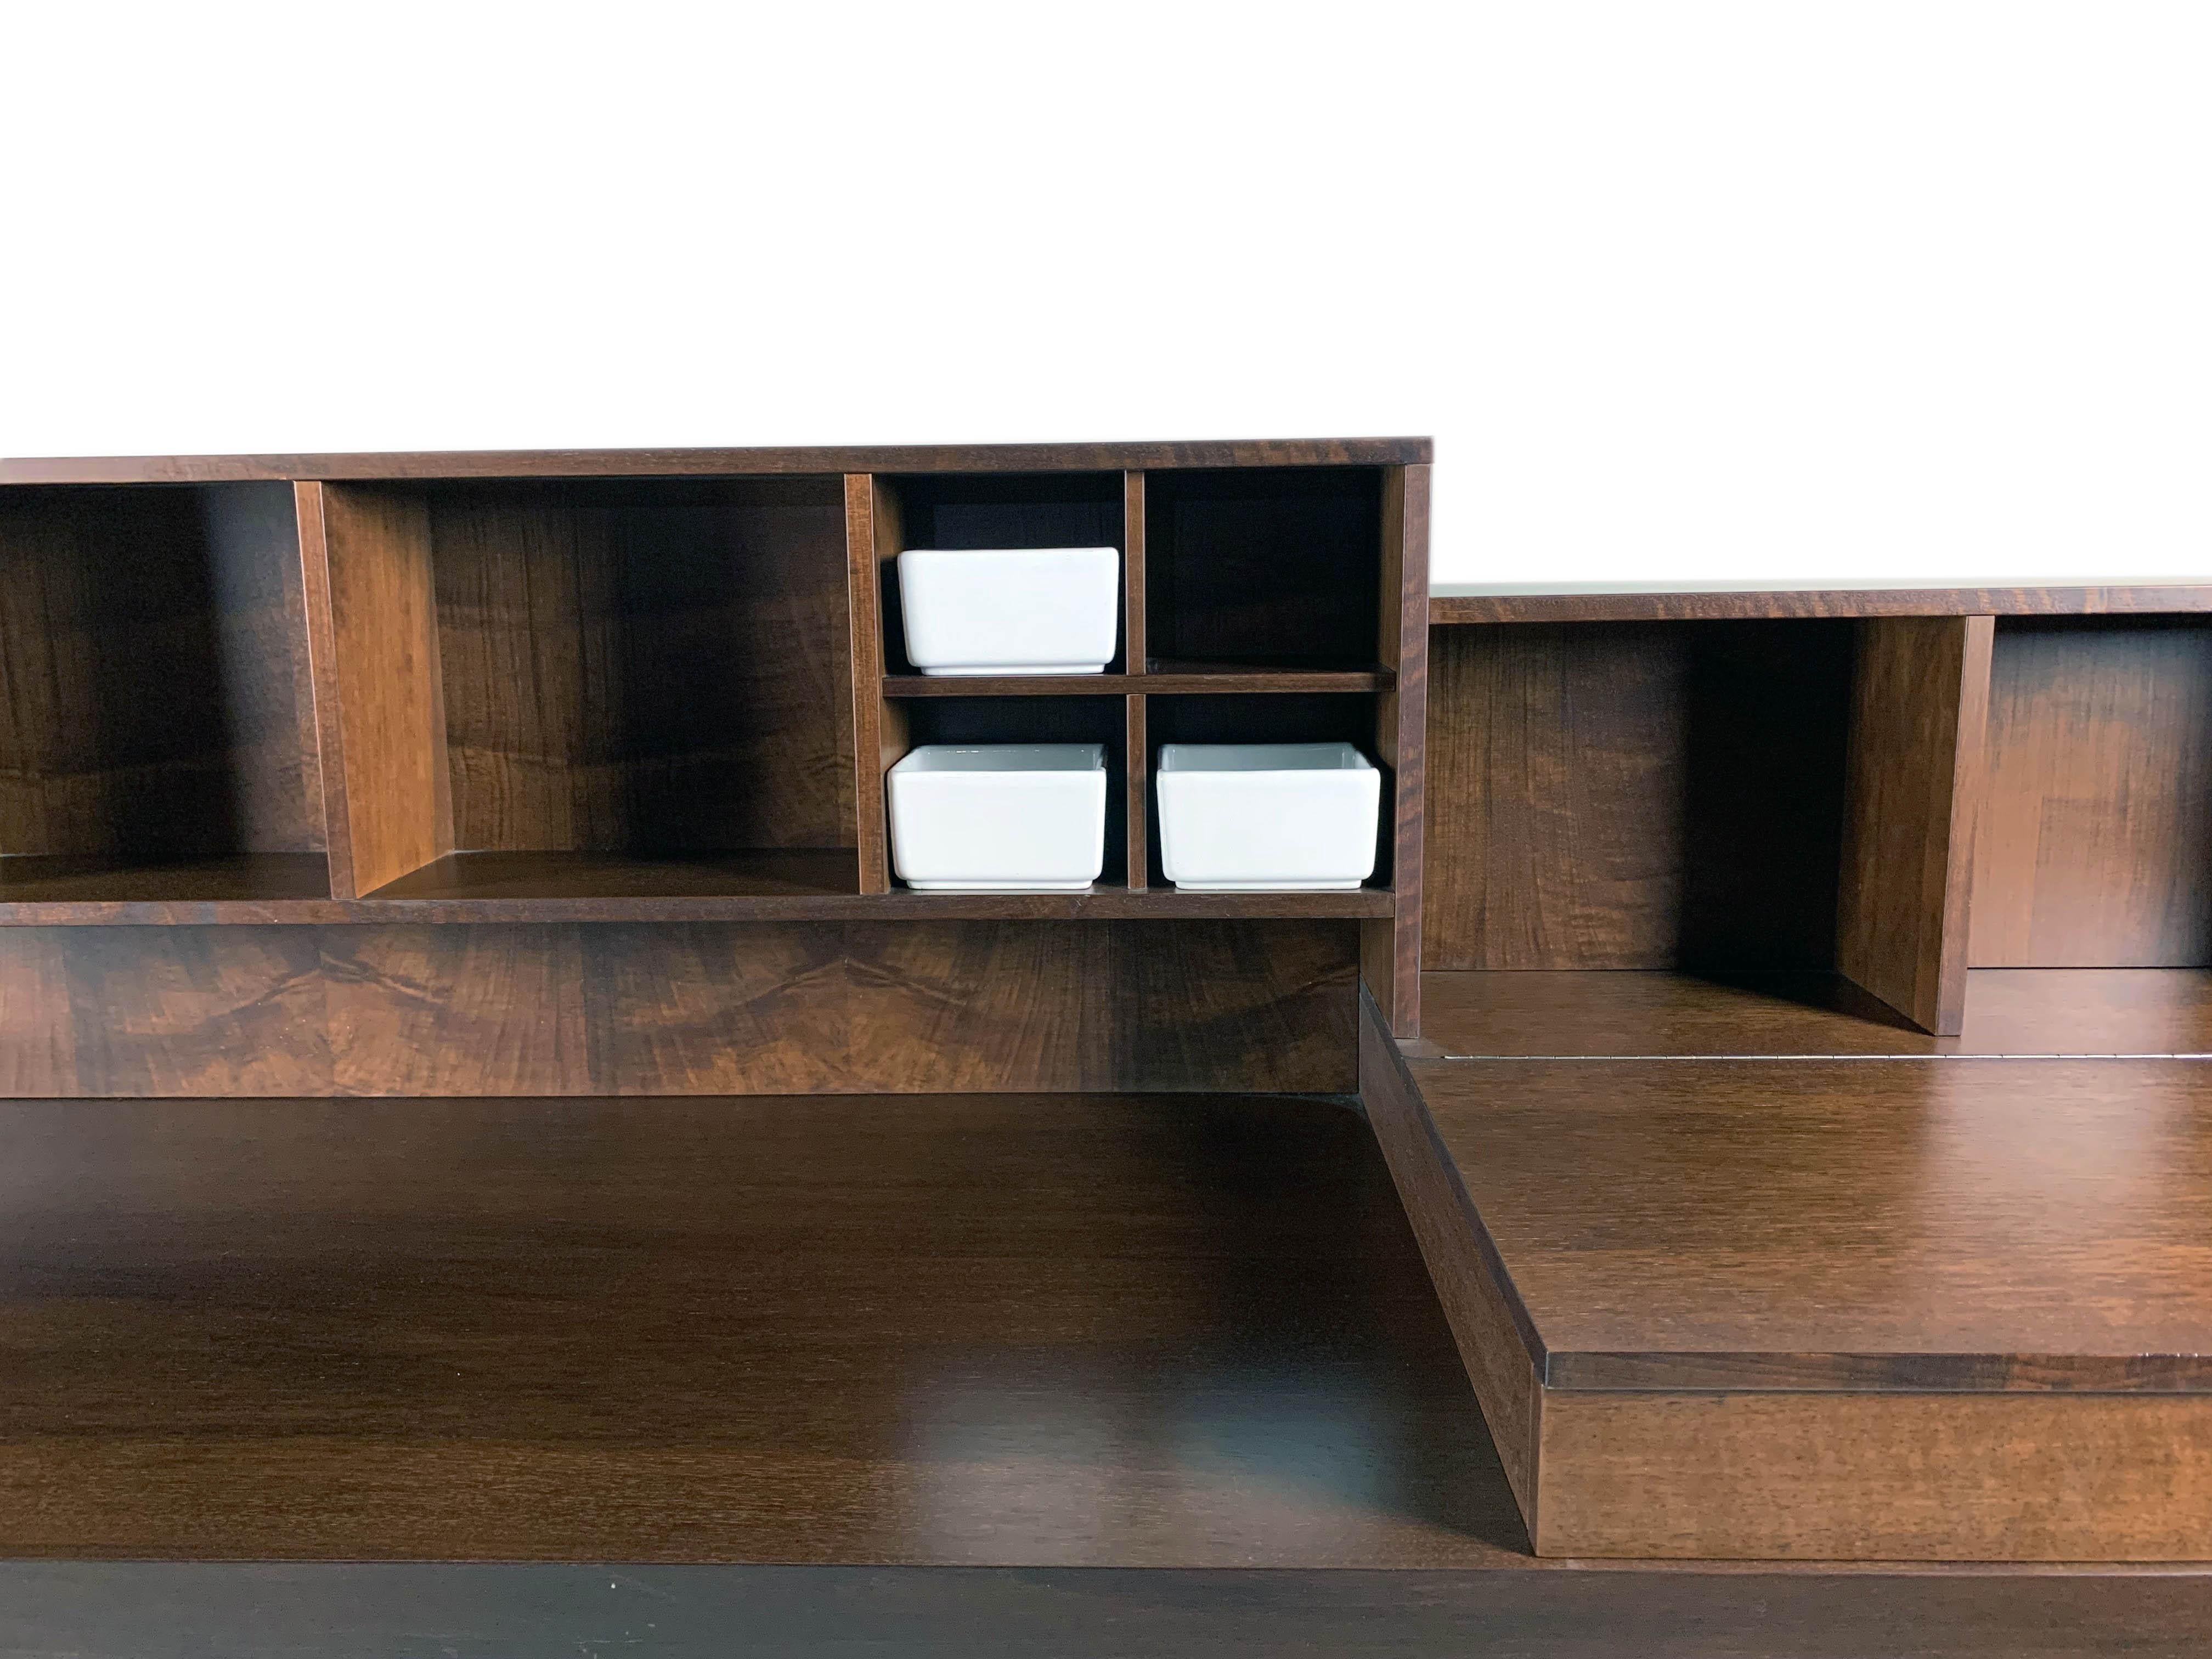 Pranzo est une armoire clairement inspirée de la tradition de l'ébénisterie lombarde en bois de noyer, reflétant l'approche essentielle de Silvio Canne en matière de design ; un design exempt d'excès stylistiques éphémères et axé sur la durabilité